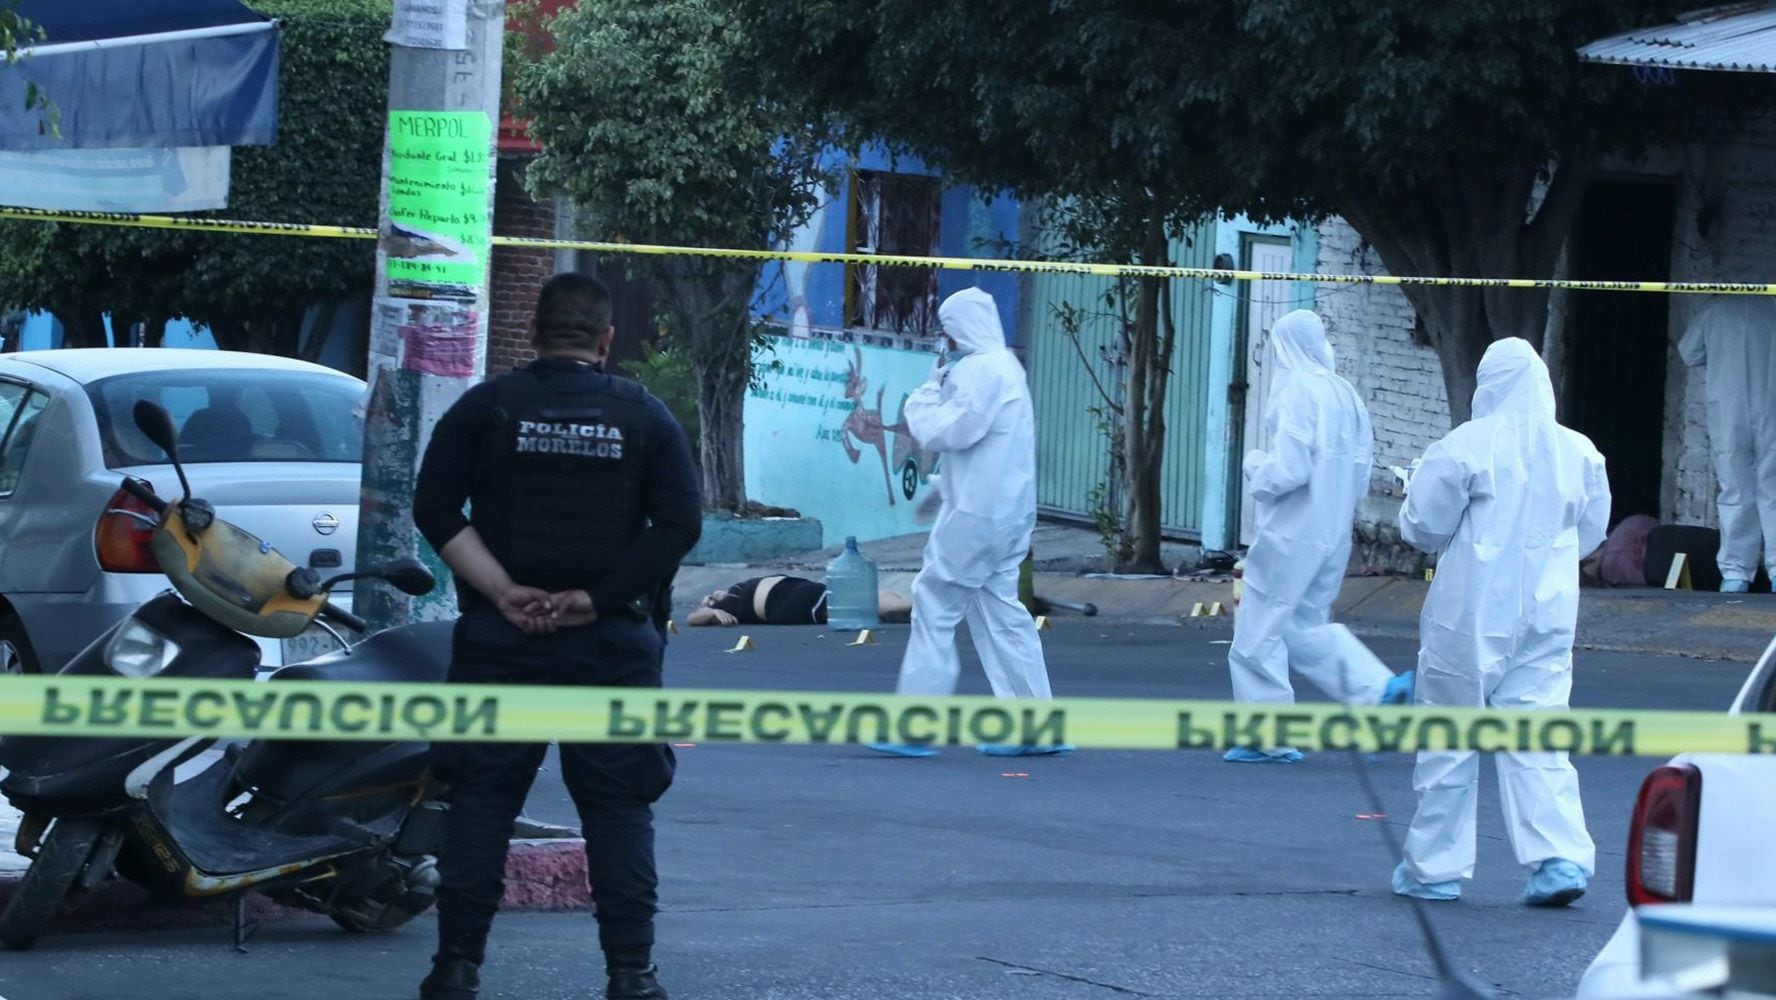 Crimen organizado, la ‘causa y consecuencia’ de la grave inseguridad en Latinoamérica, dice informe